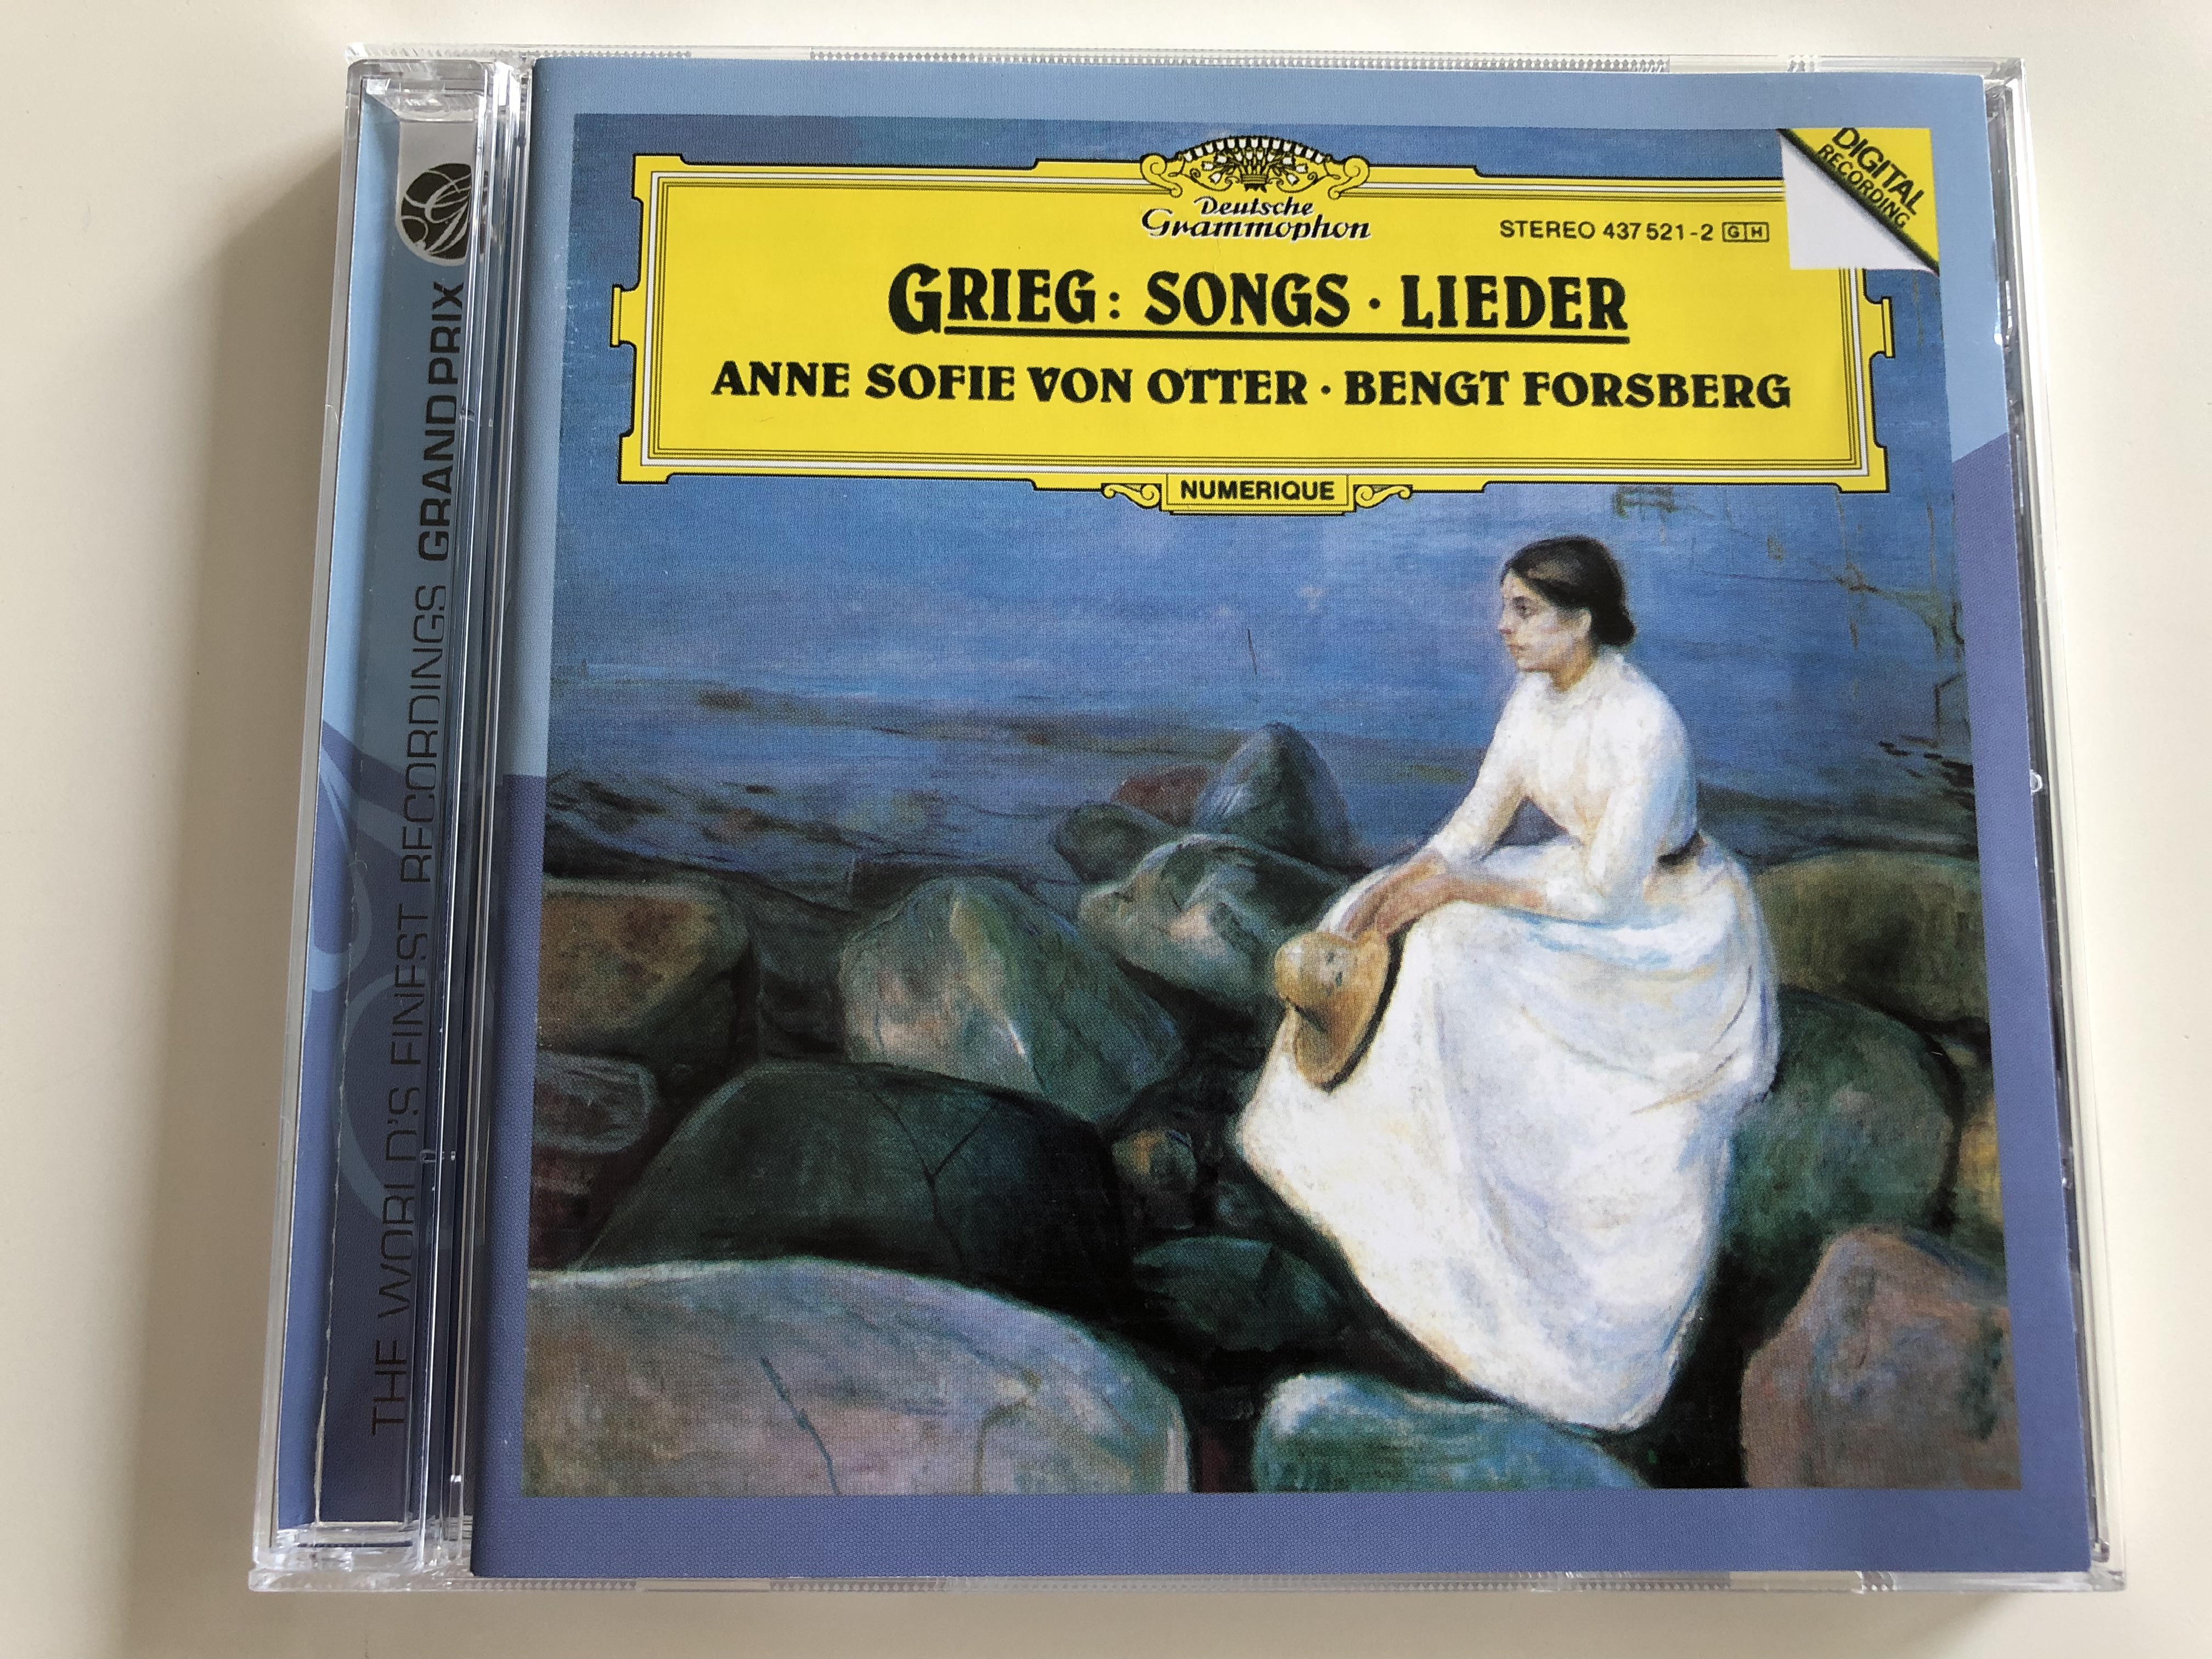 grieg-songs-lieder-anne-sofie-von-otter-mezzo-soprano-bengt-forsberg-piano-deutsche-grammophon-audio-cd-1993-1-.jpg